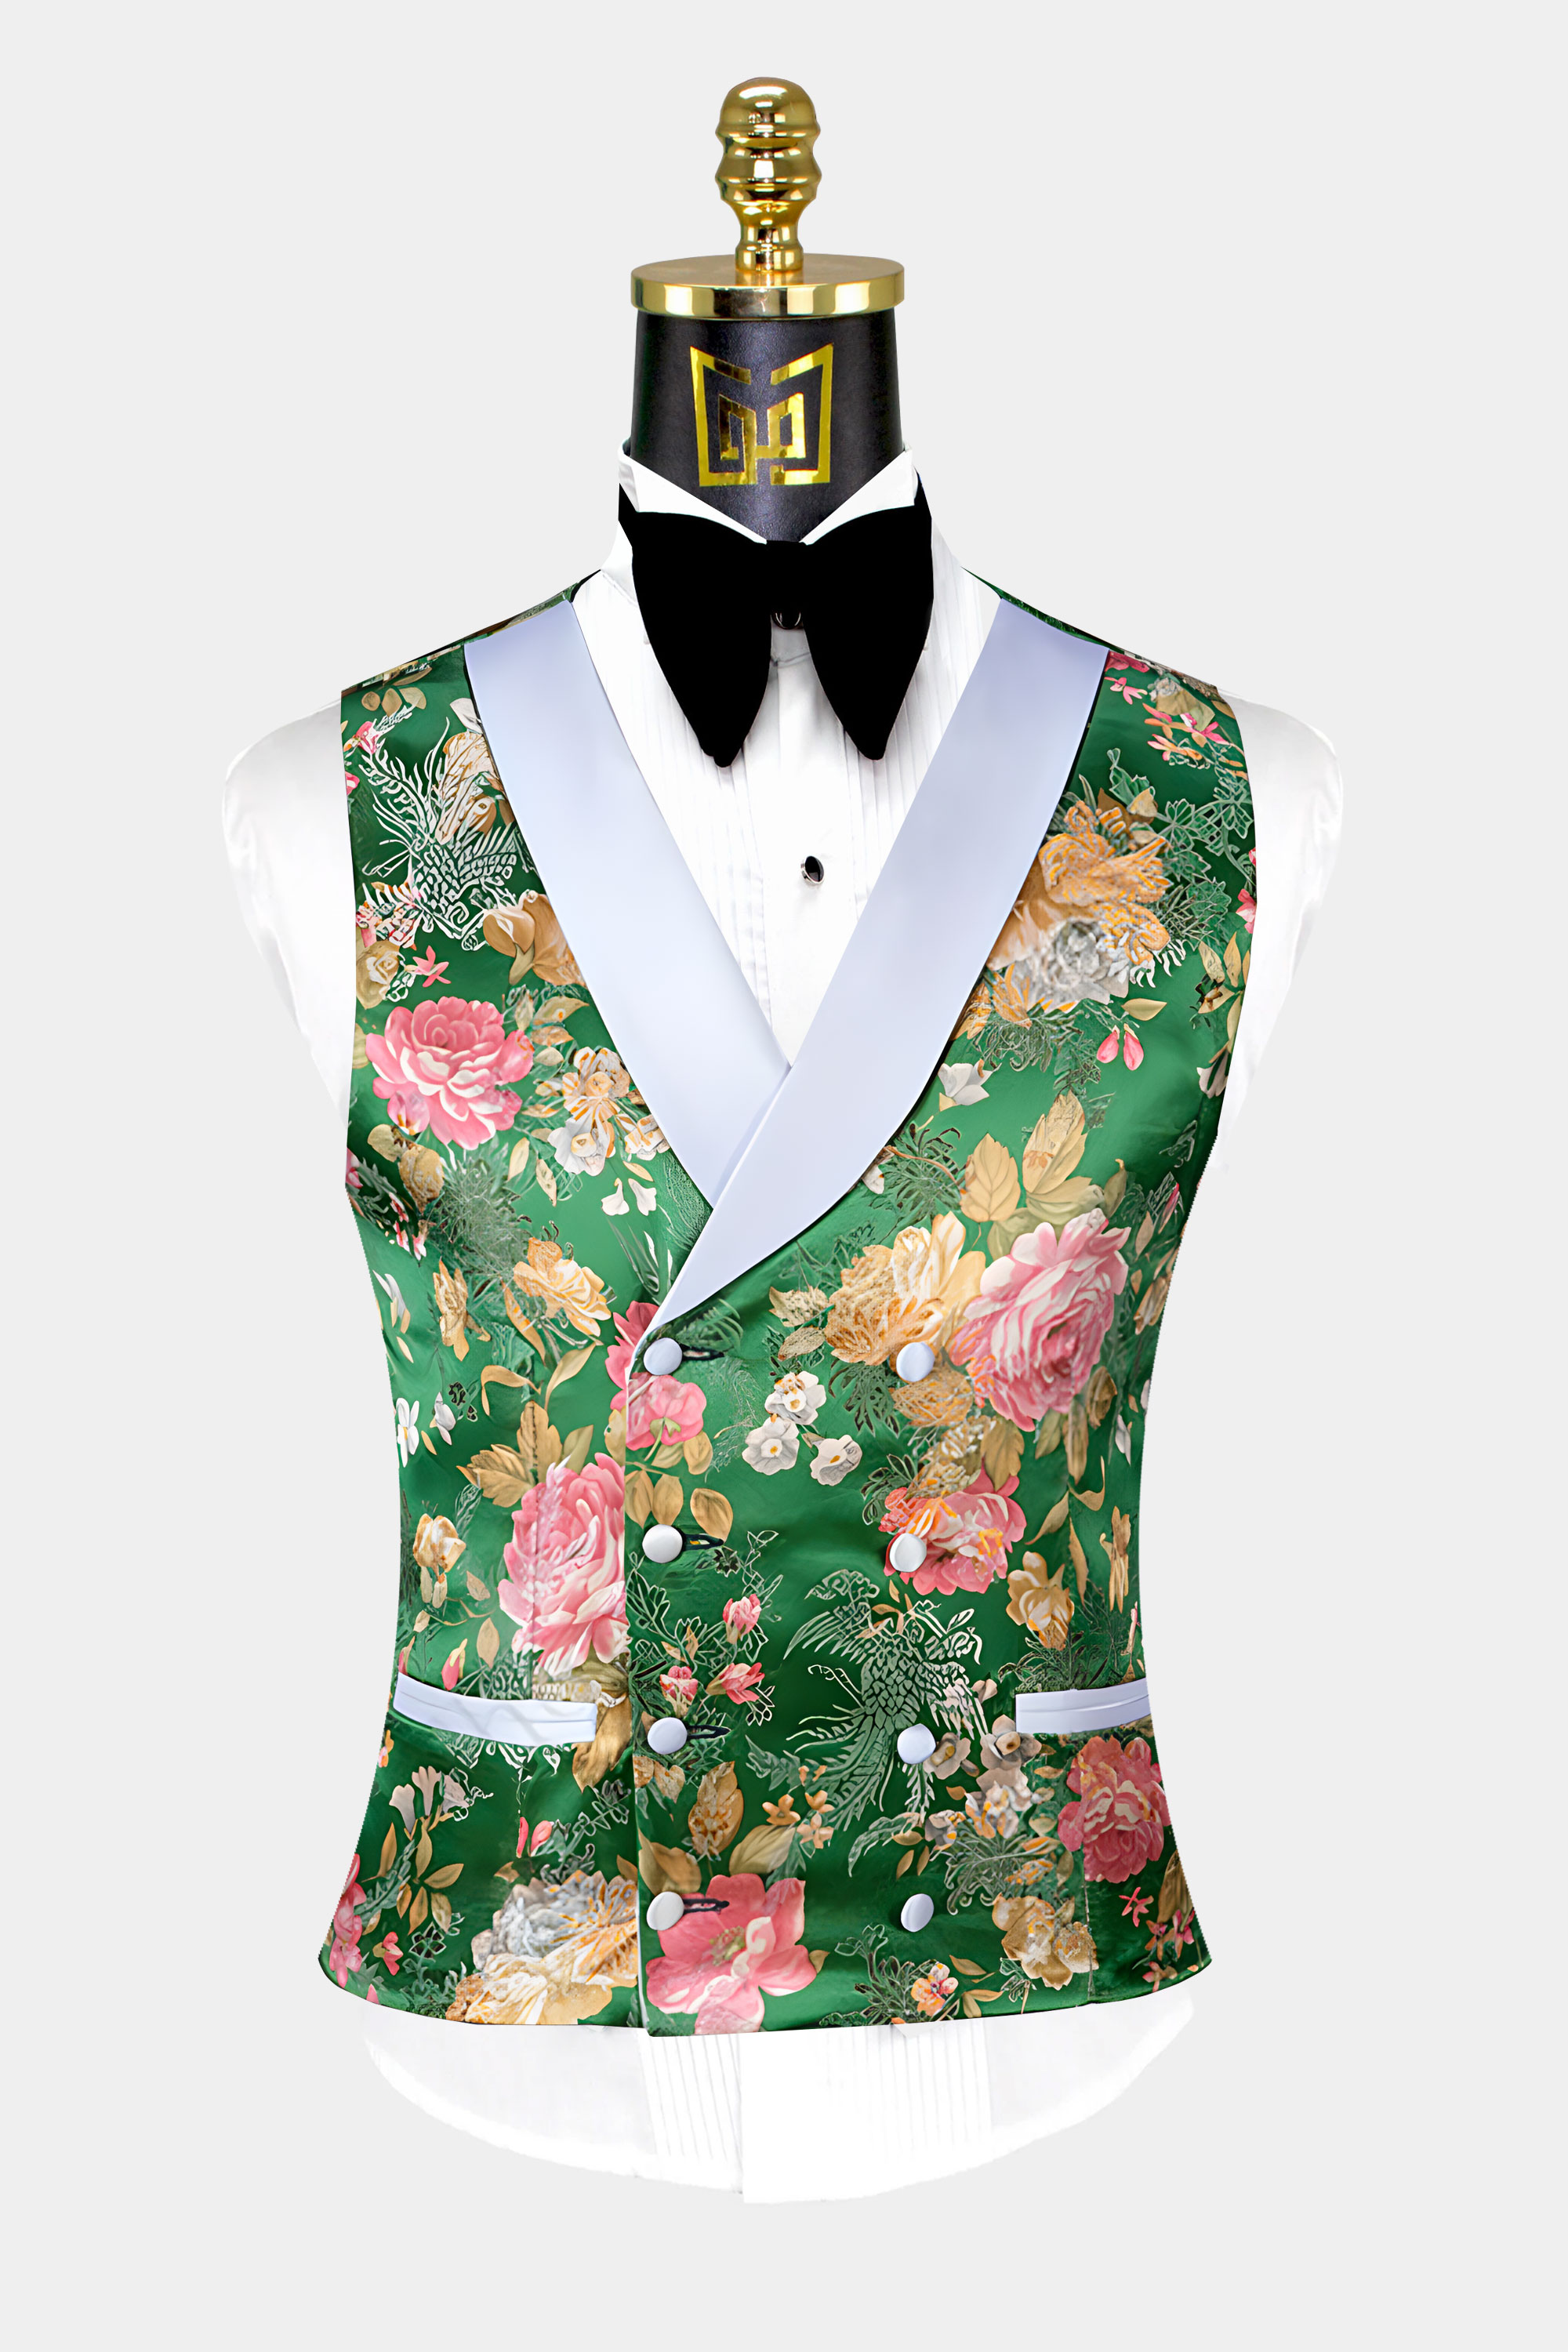 Floral-Green-Tuxedo-Vest-from-Gentlemansguru.com